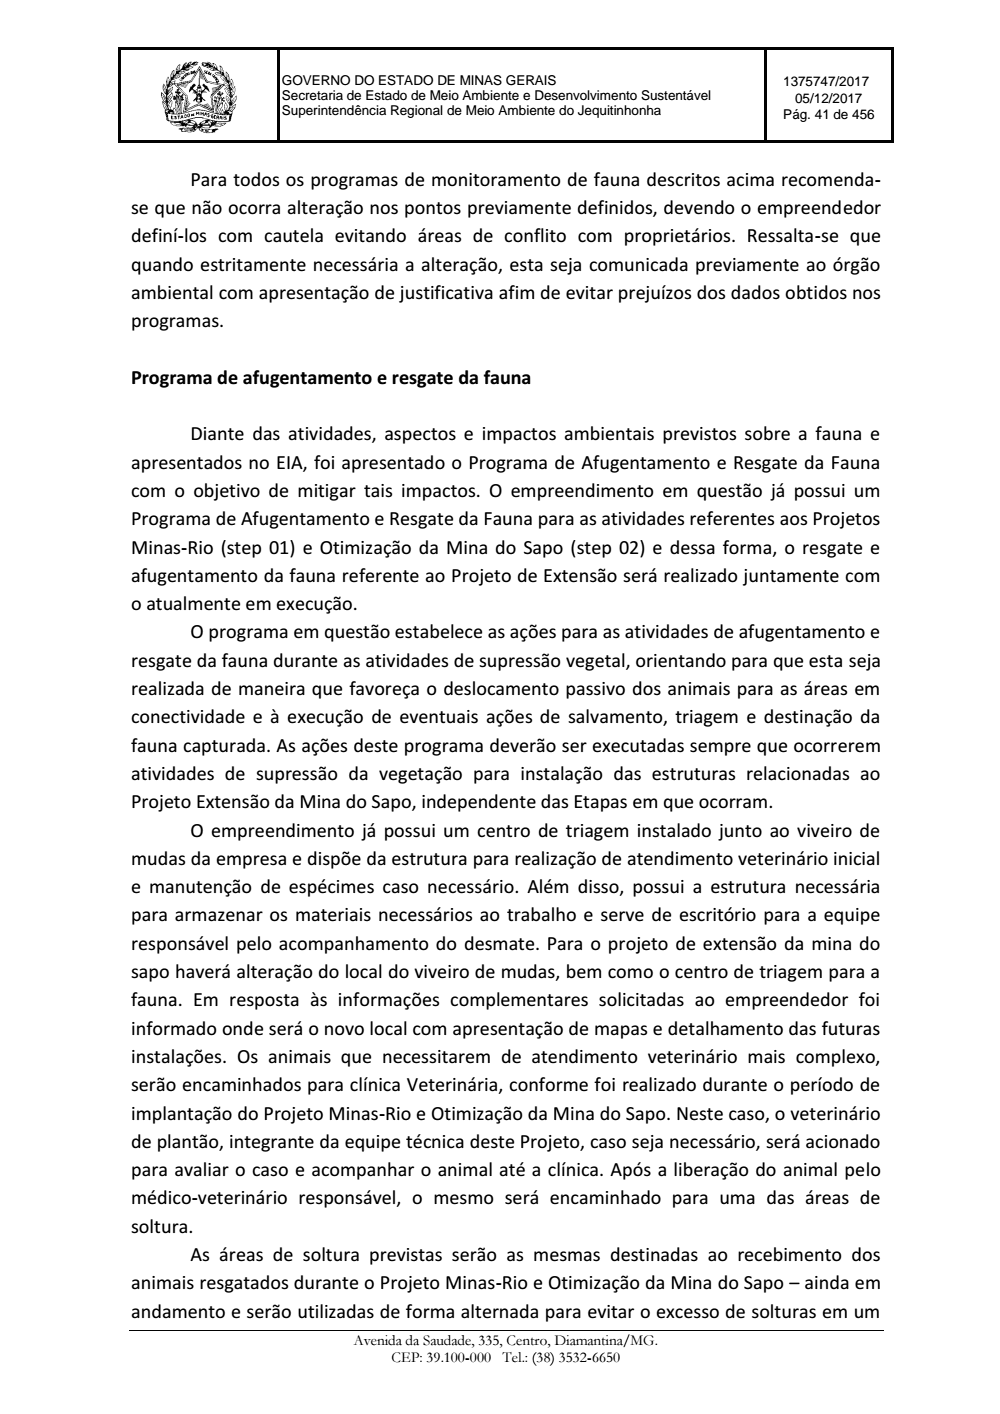 Page 41 from Parecer único da Secretaria de estado de Meio Ambiente e Desenvolvimento Sustentável (SEMAD)